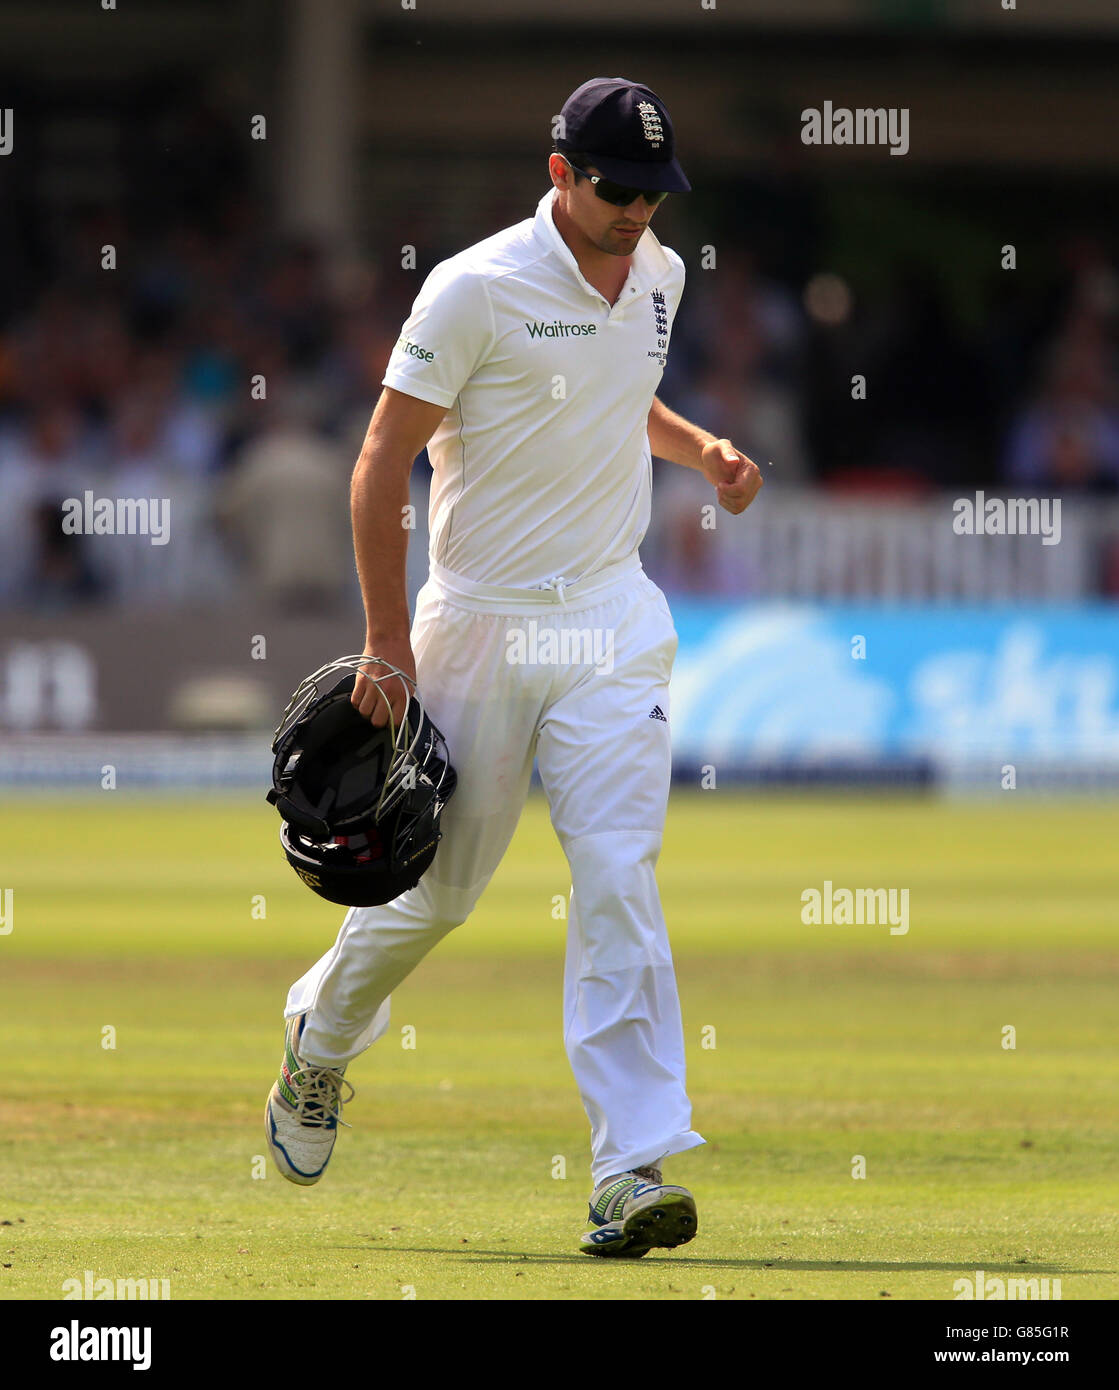 Cricket - deuxième Test Investec Ashes - Angleterre v Australie - première journée - Lord's. Le capitaine d'Angleterre Alastair Cook montre sa déjection Banque D'Images